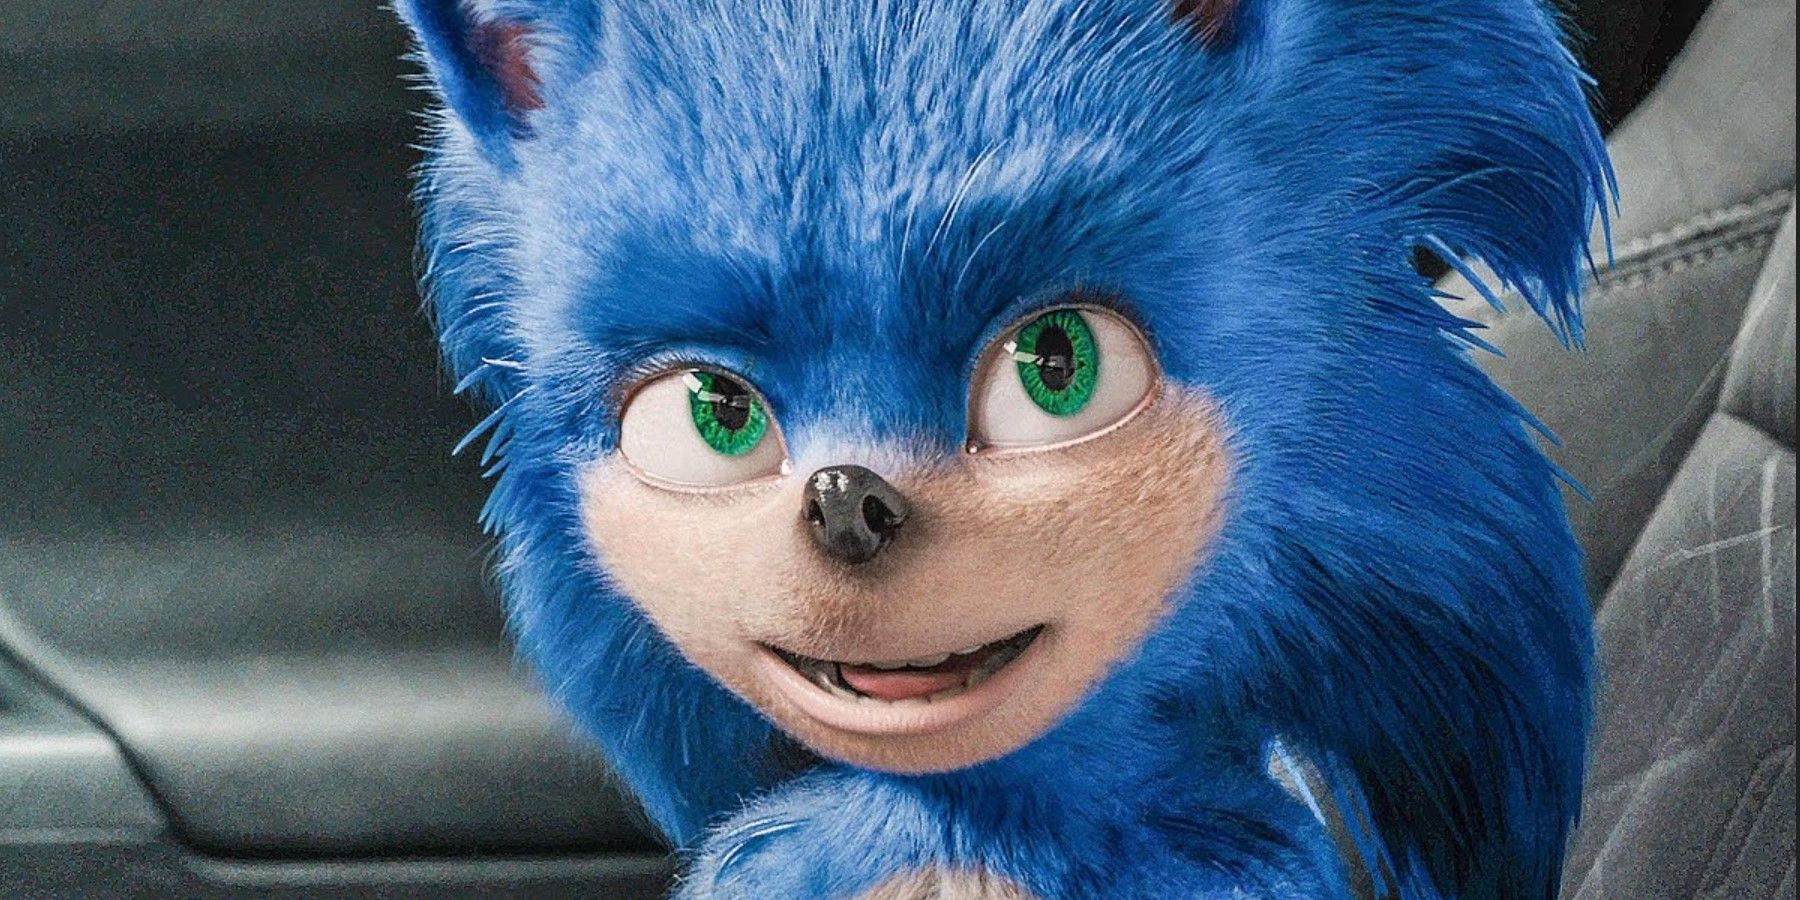 Популярные теории фанатов Sonic The Hedgehog